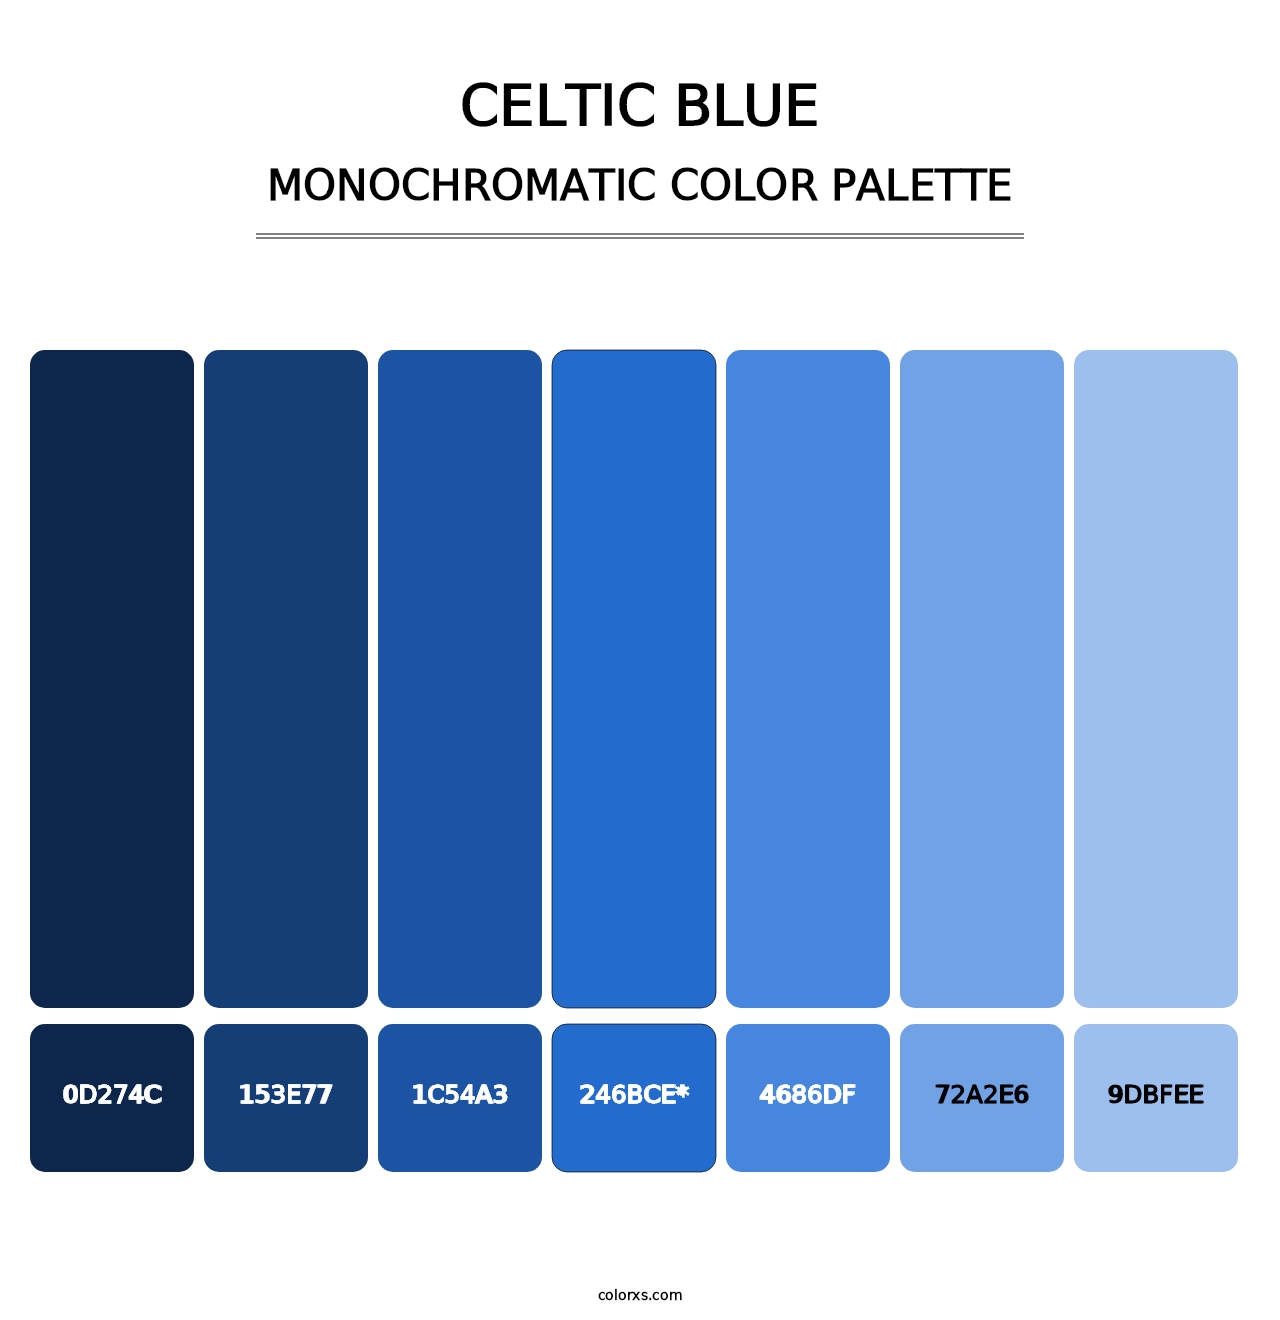 Celtic Blue - Monochromatic Color Palette